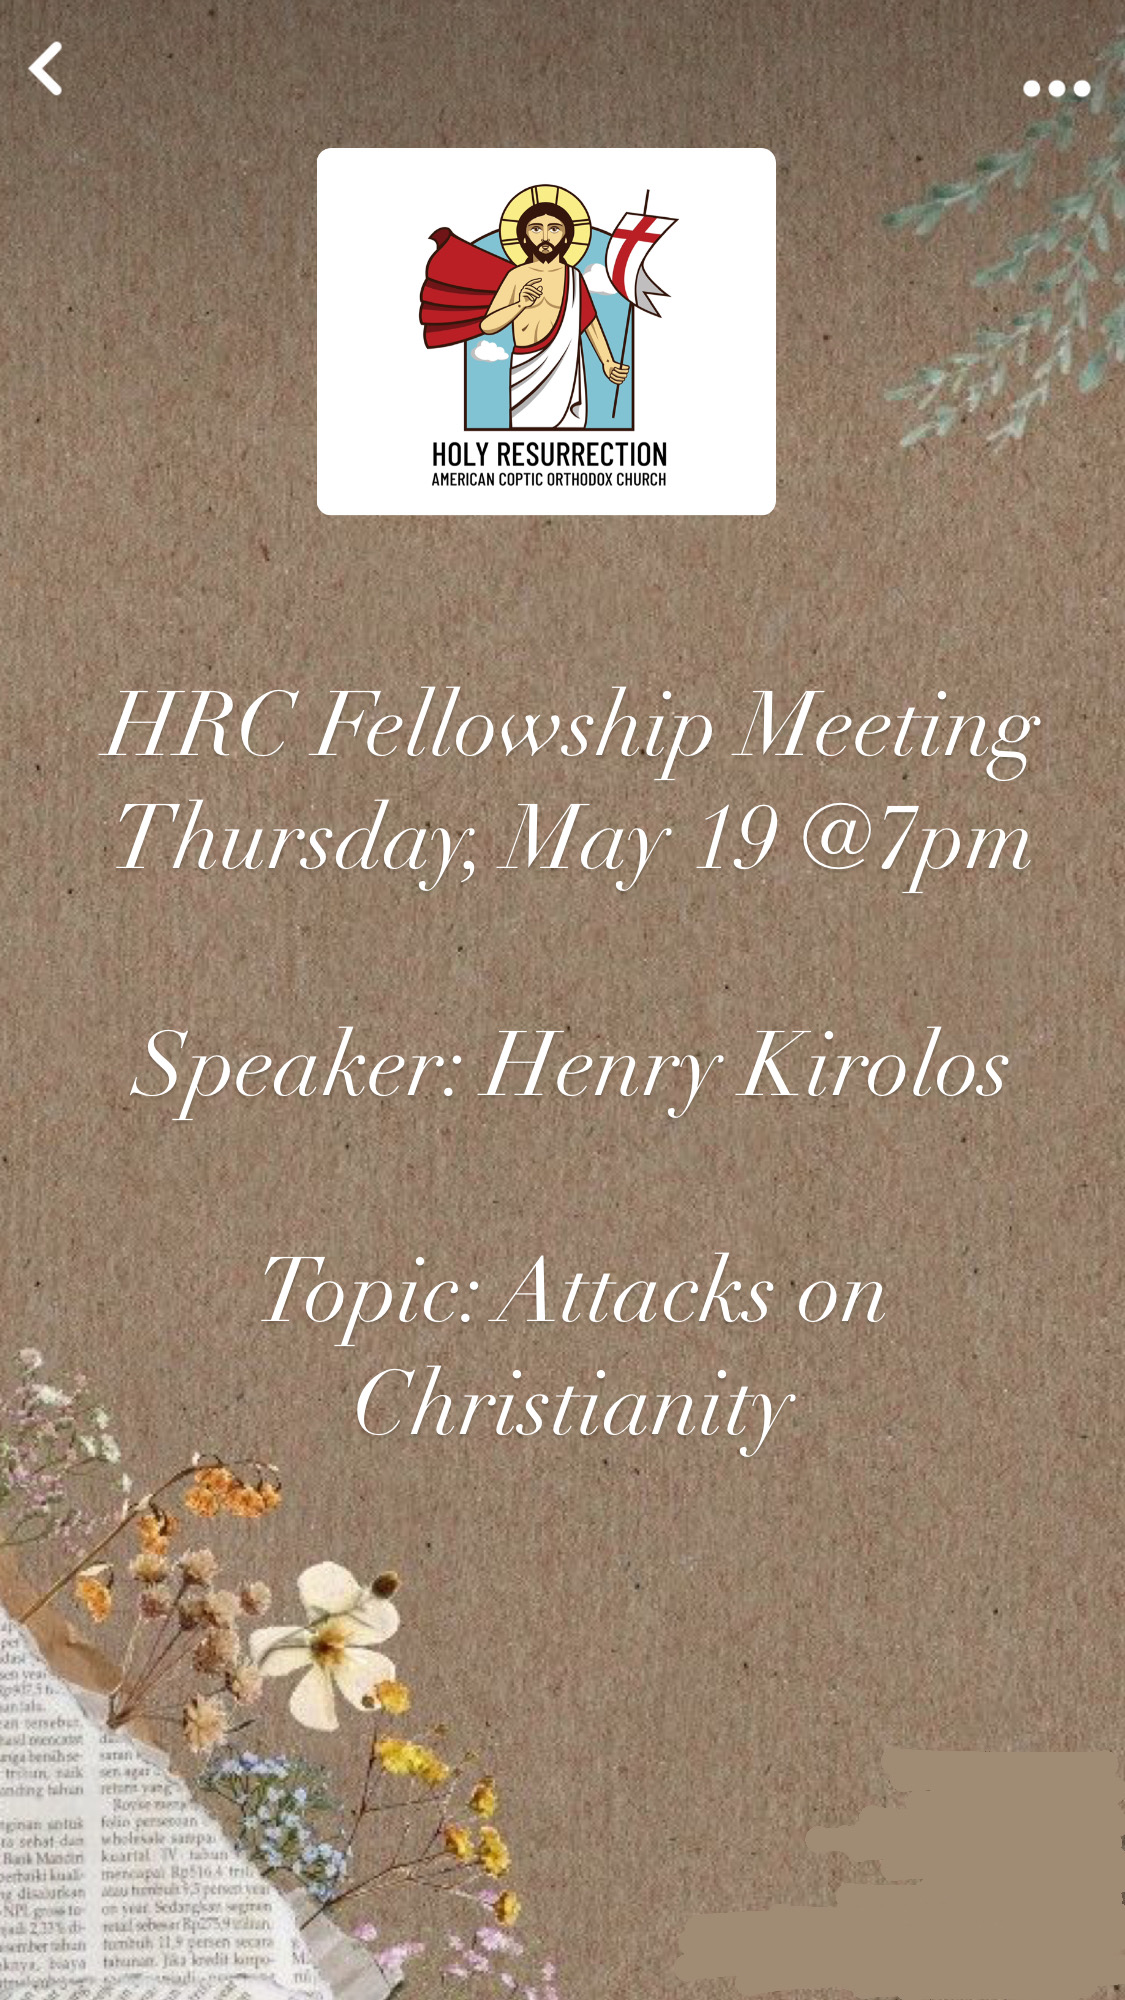 HRC Fellowship meeting flyer